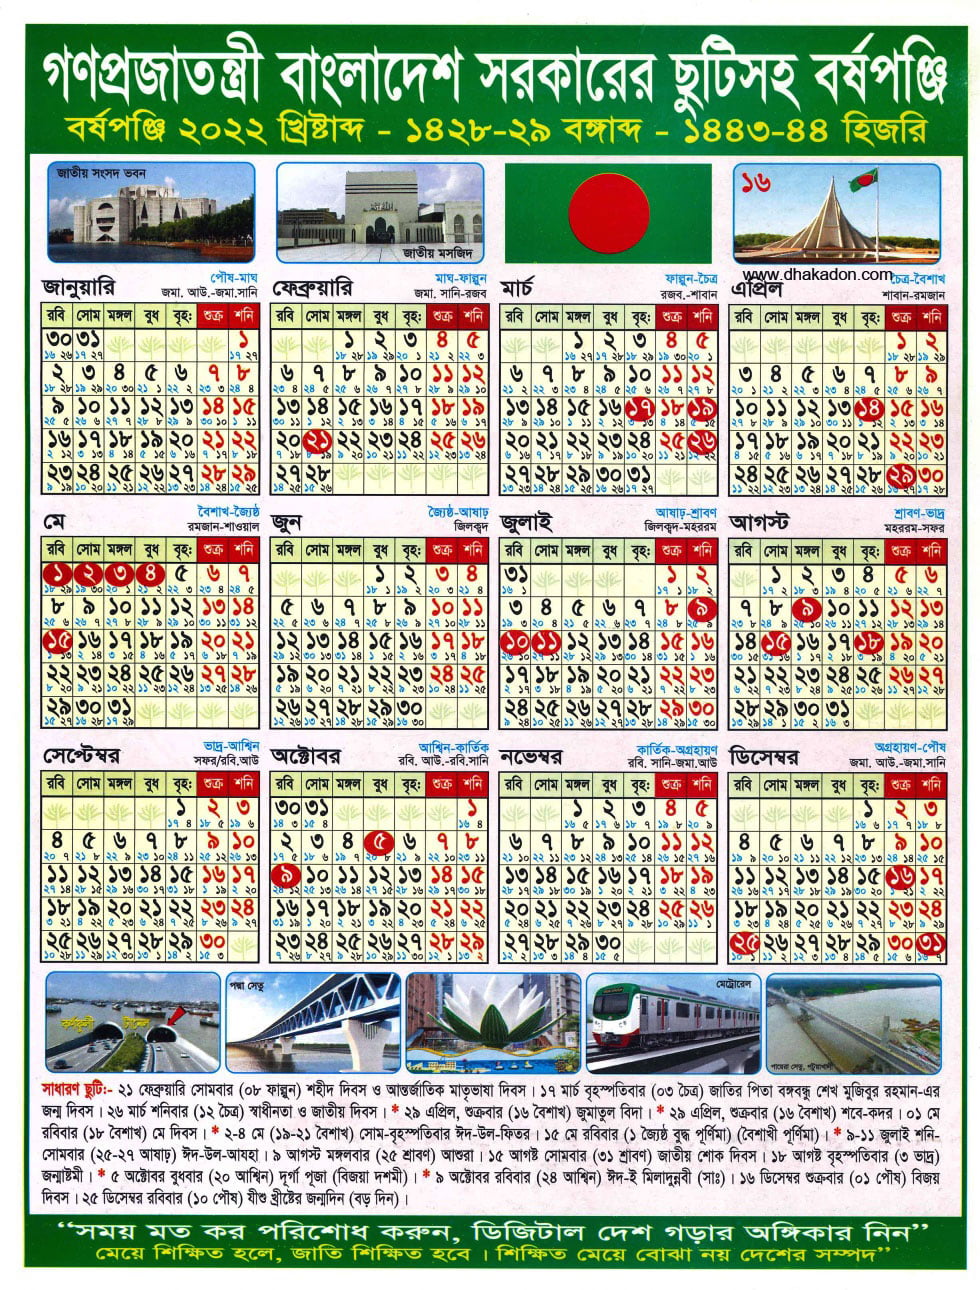 সরকারি ছুটির তালিকা ২০২২ | বাংলা ক্যালেন্ডার | Bangladesh govt holiday 2022